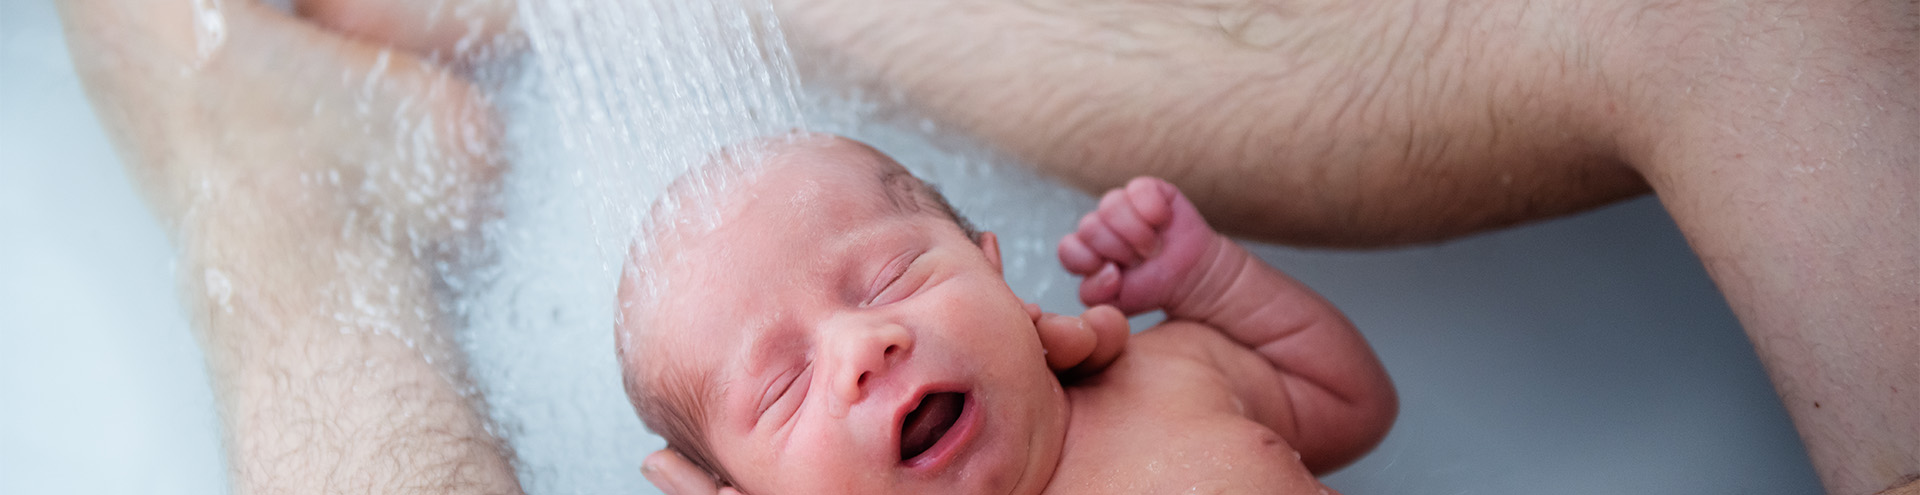 Newborn baby tips, Newborn baby care, Baby shower